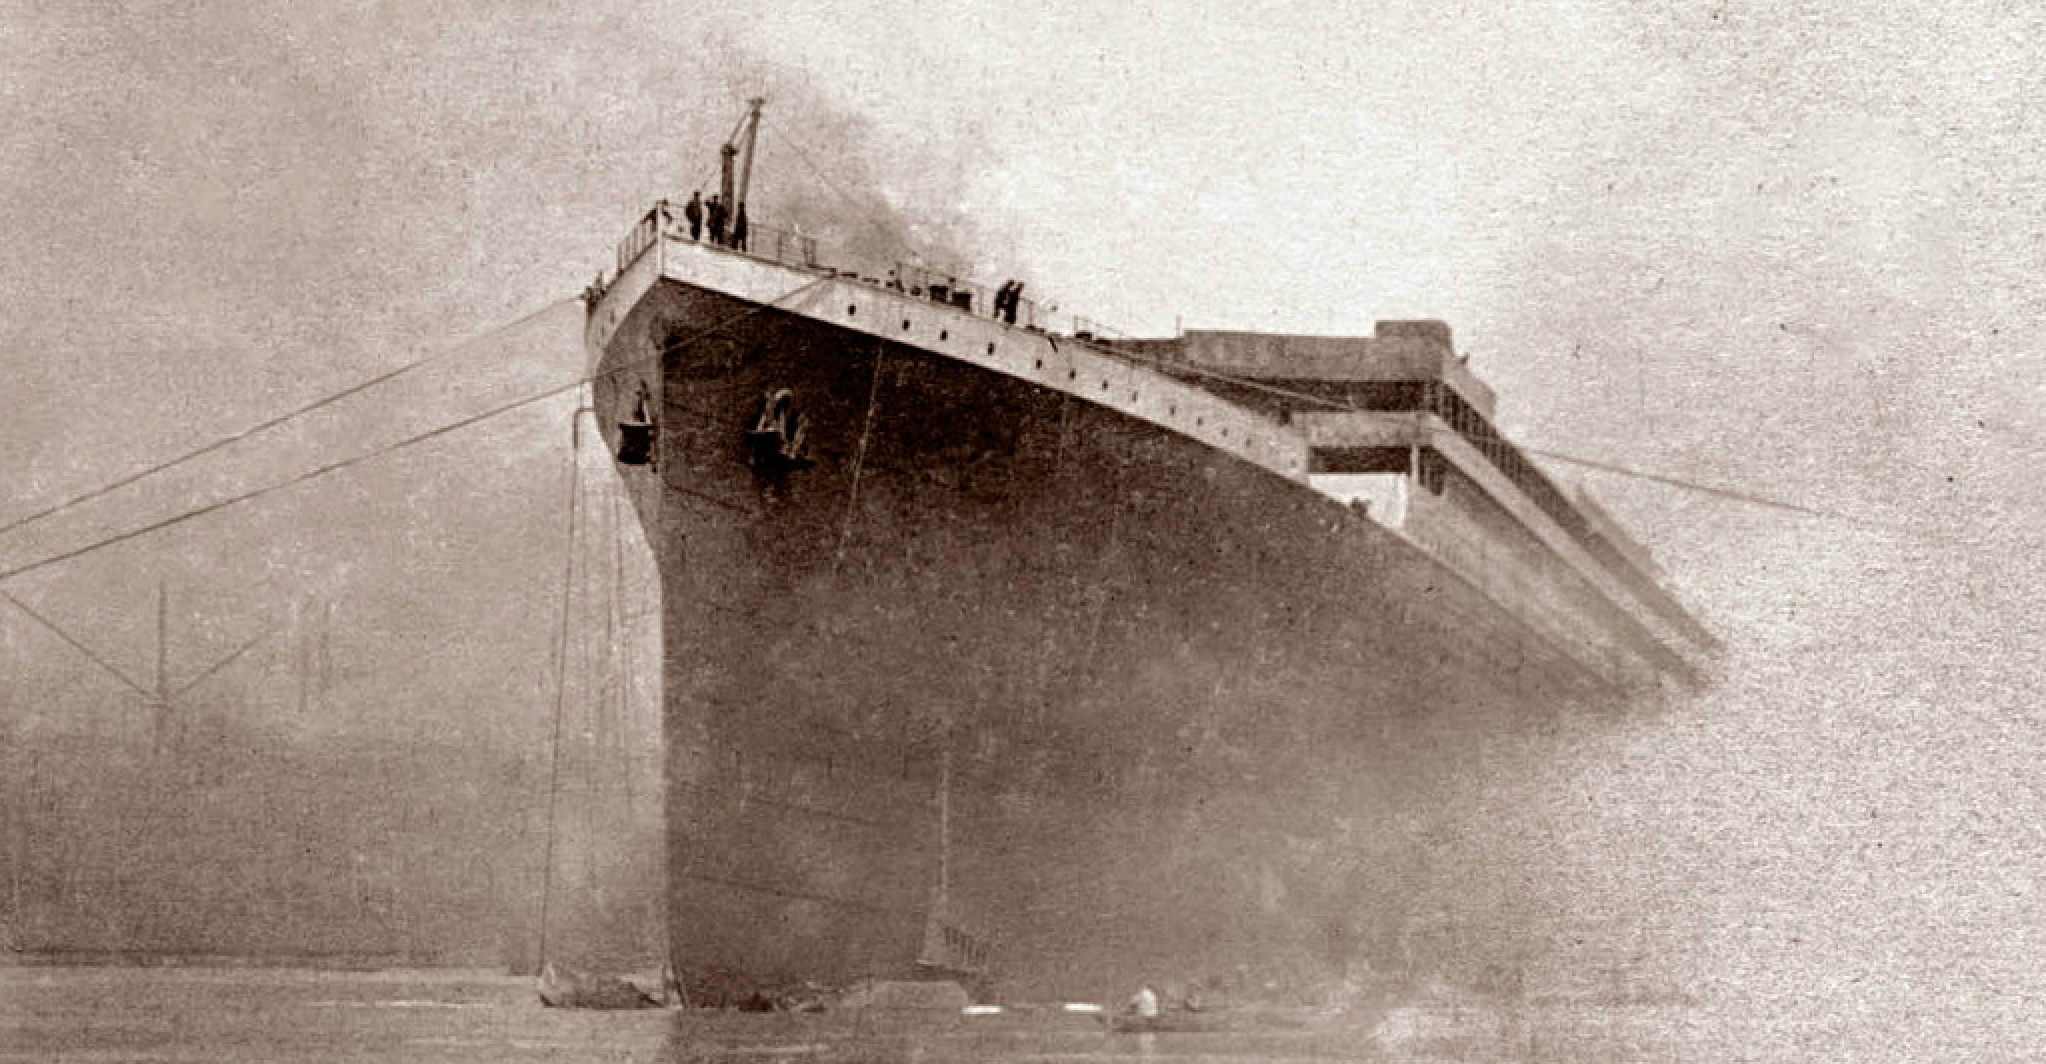 L'iceberg ne serait pas la seule cause du naufrage du Titanic. Ici, photographie du Titanic extraite du film Titanic&nbsp;: The New Evidence. © Channel 4